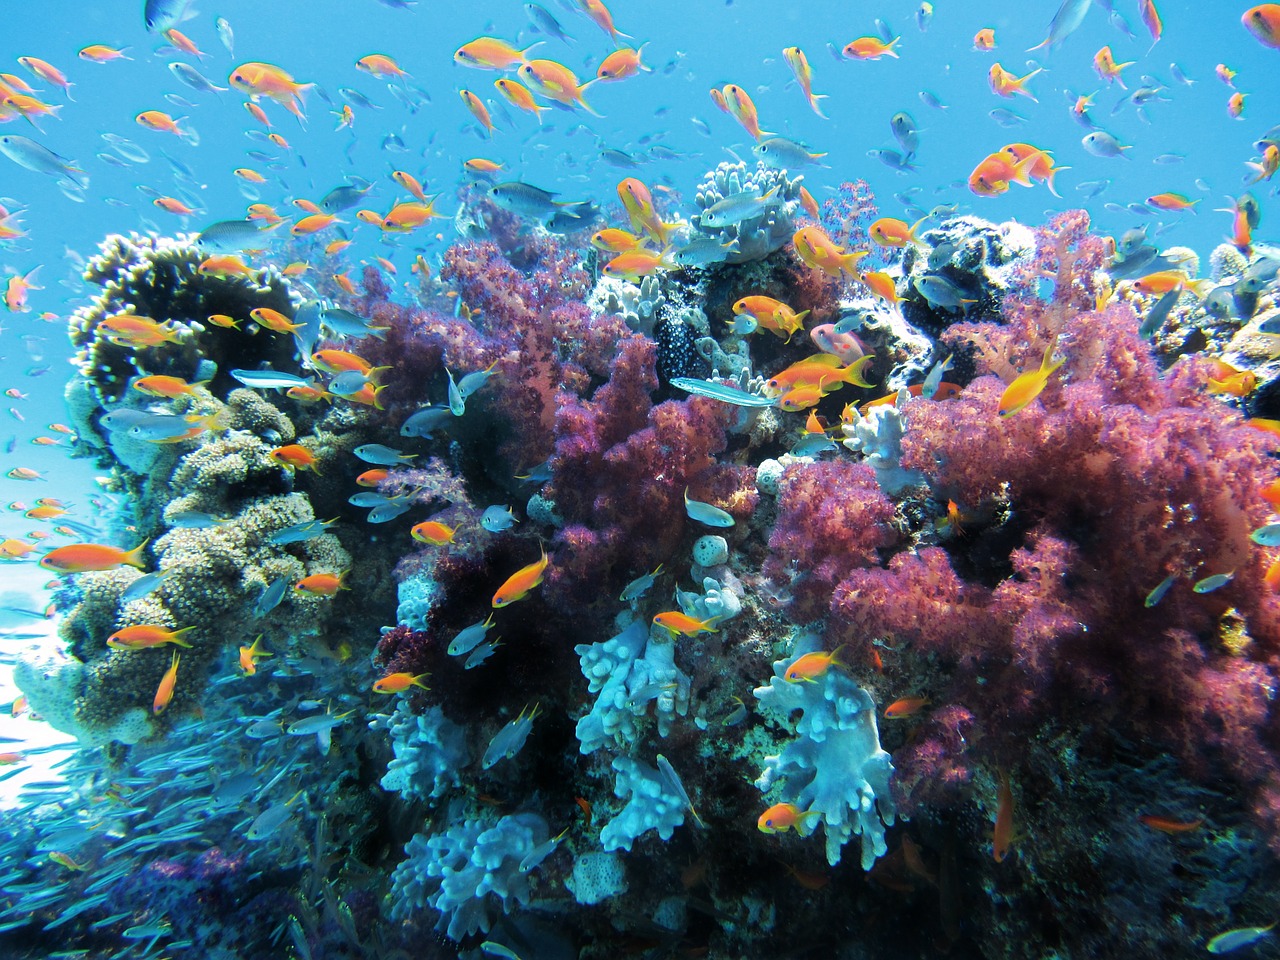 Scoperte in Sicilia foreste di rari coralli e nuove specie sui fondali